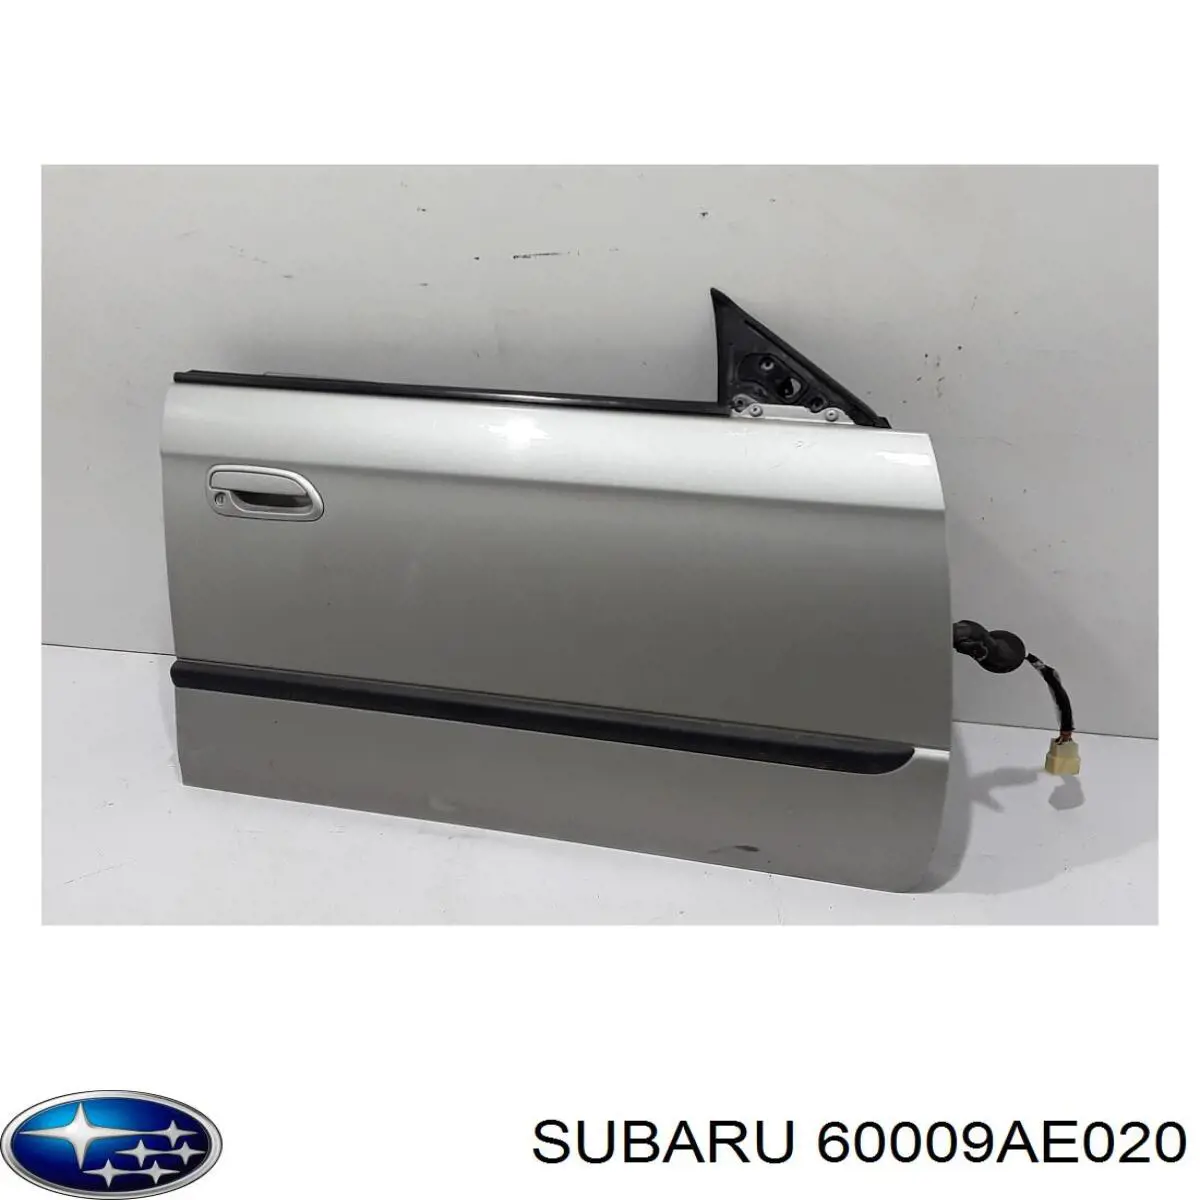 60009AE020 Subaru puerta delantera derecha